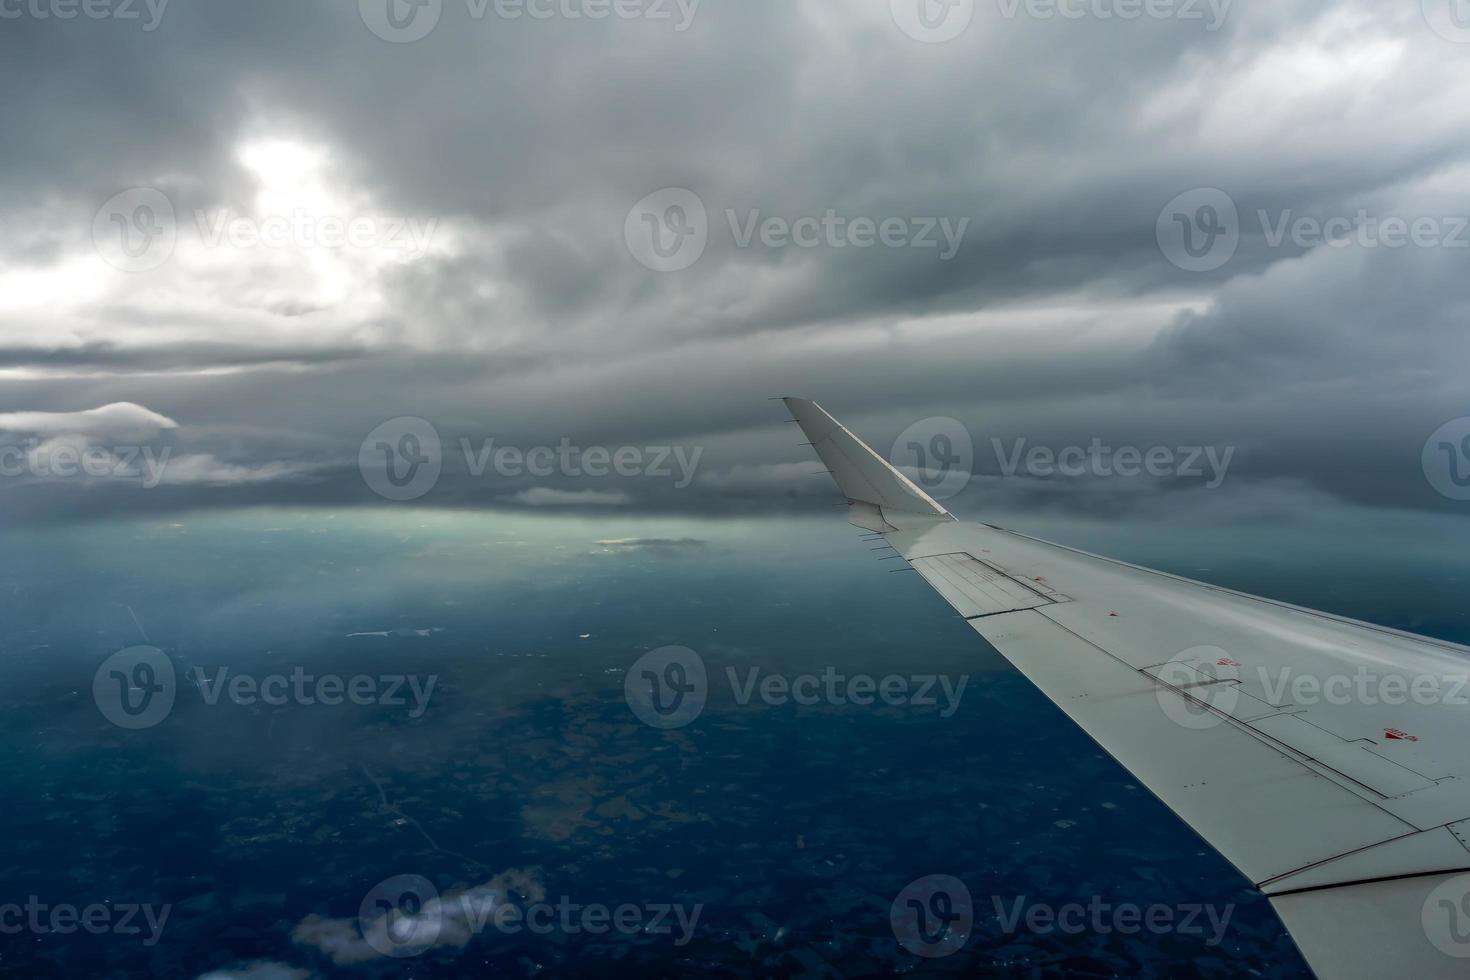 bella vista dall'alto del cielo dalle nuvole dell'aeroplano foto